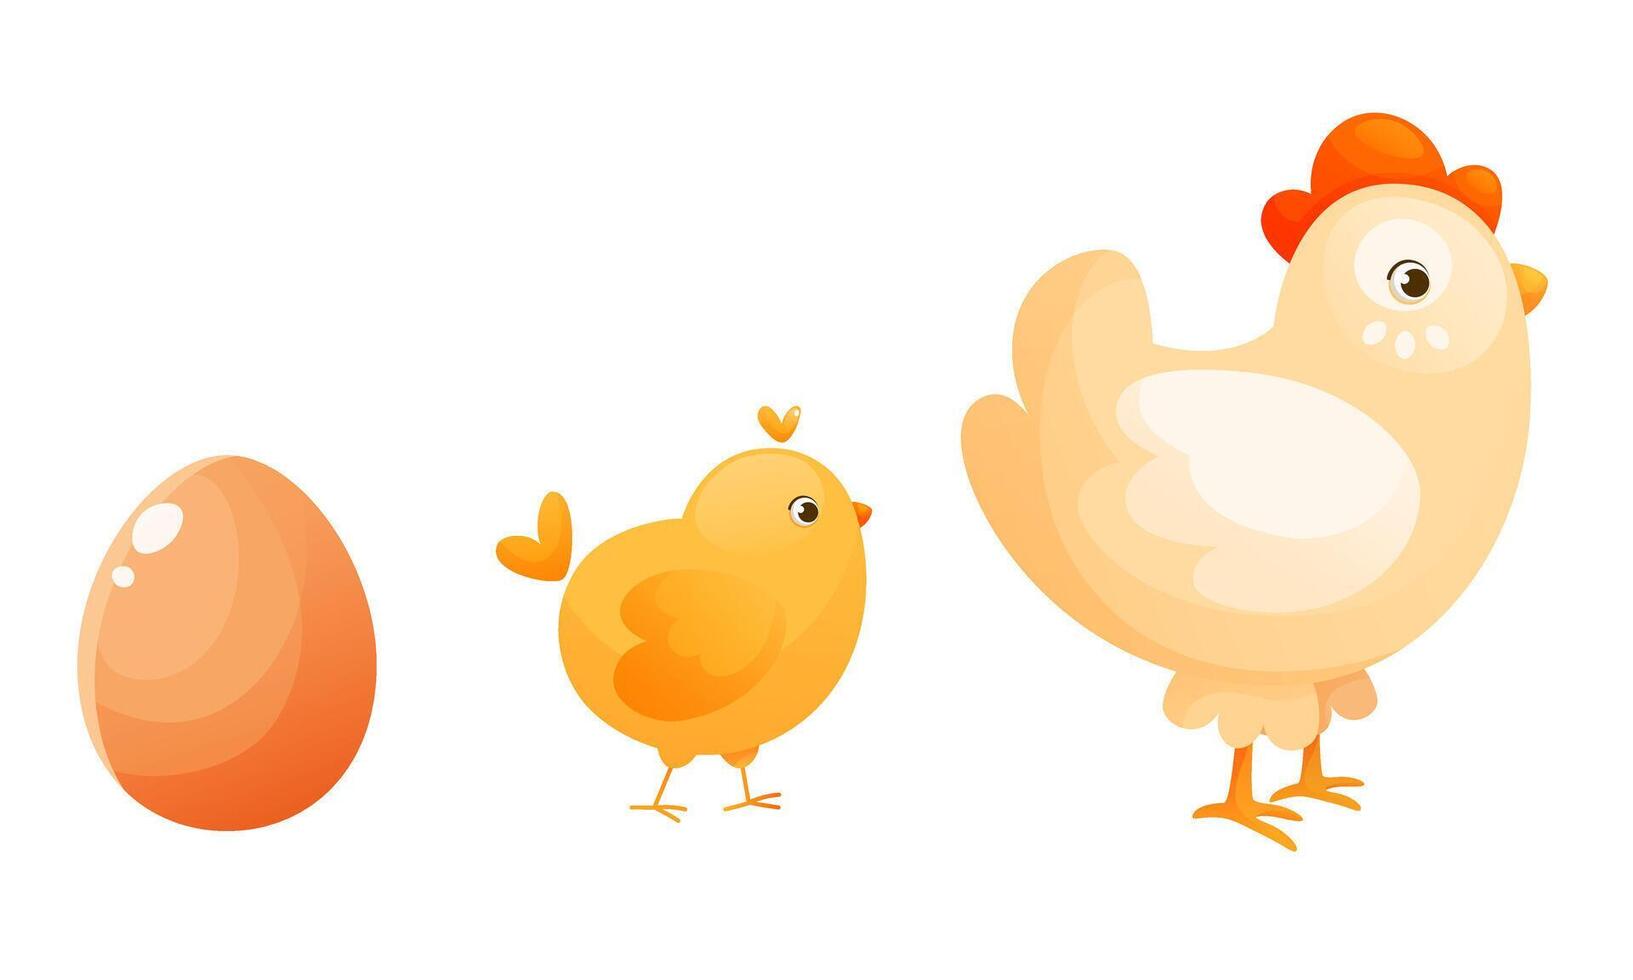 a processo do incubação e levantando uma frango, a estágios do girando a ovo para dentro uma frango. vetor